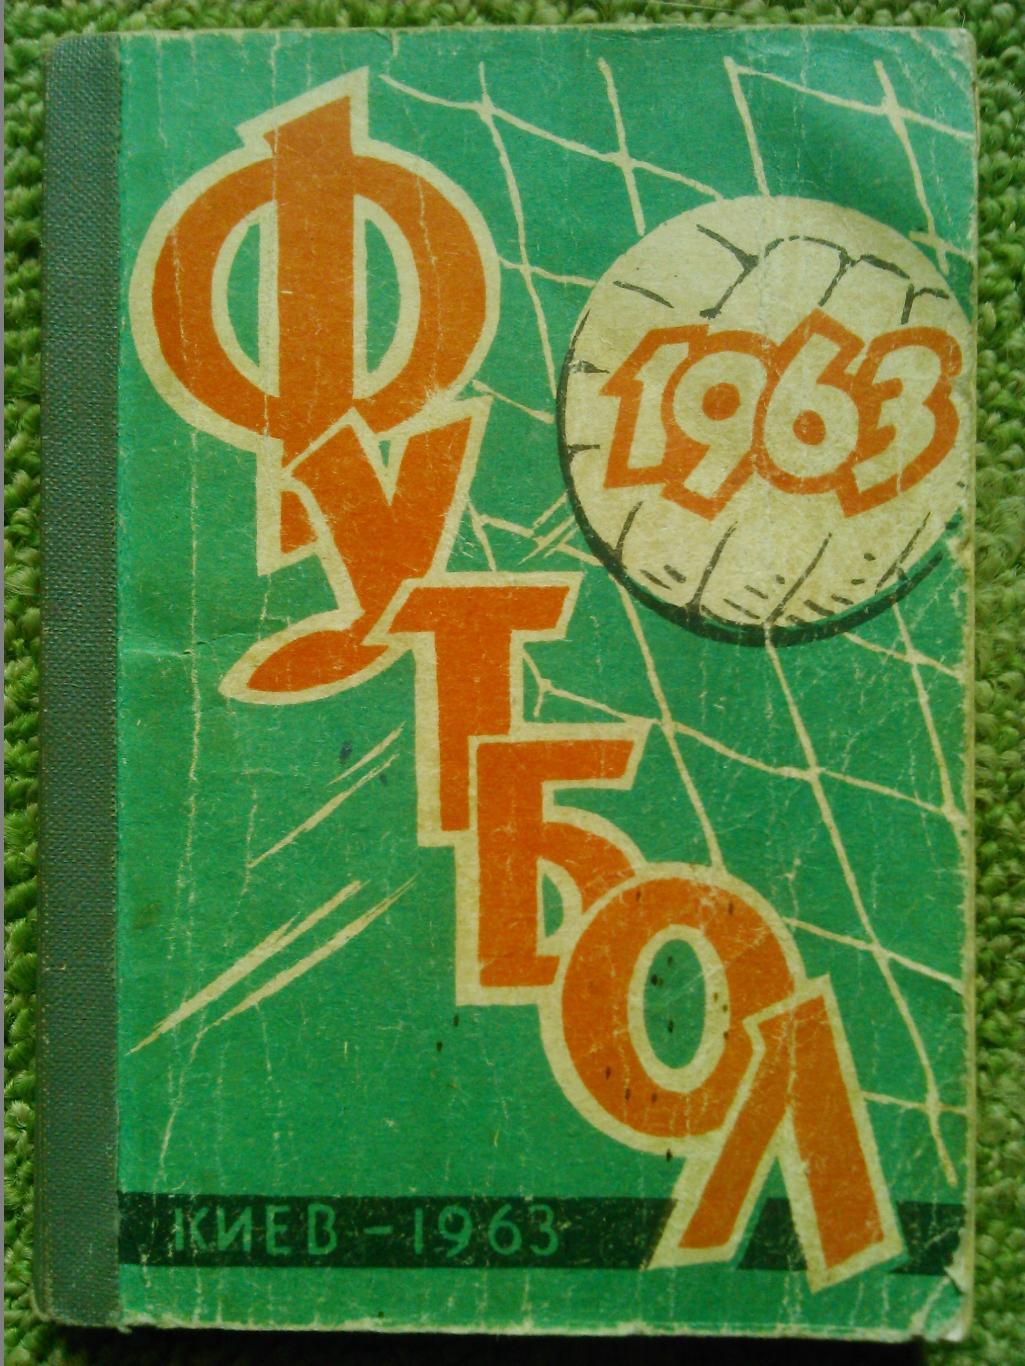 Футбол 1963. Киев. Справочник-календарь на русском языке